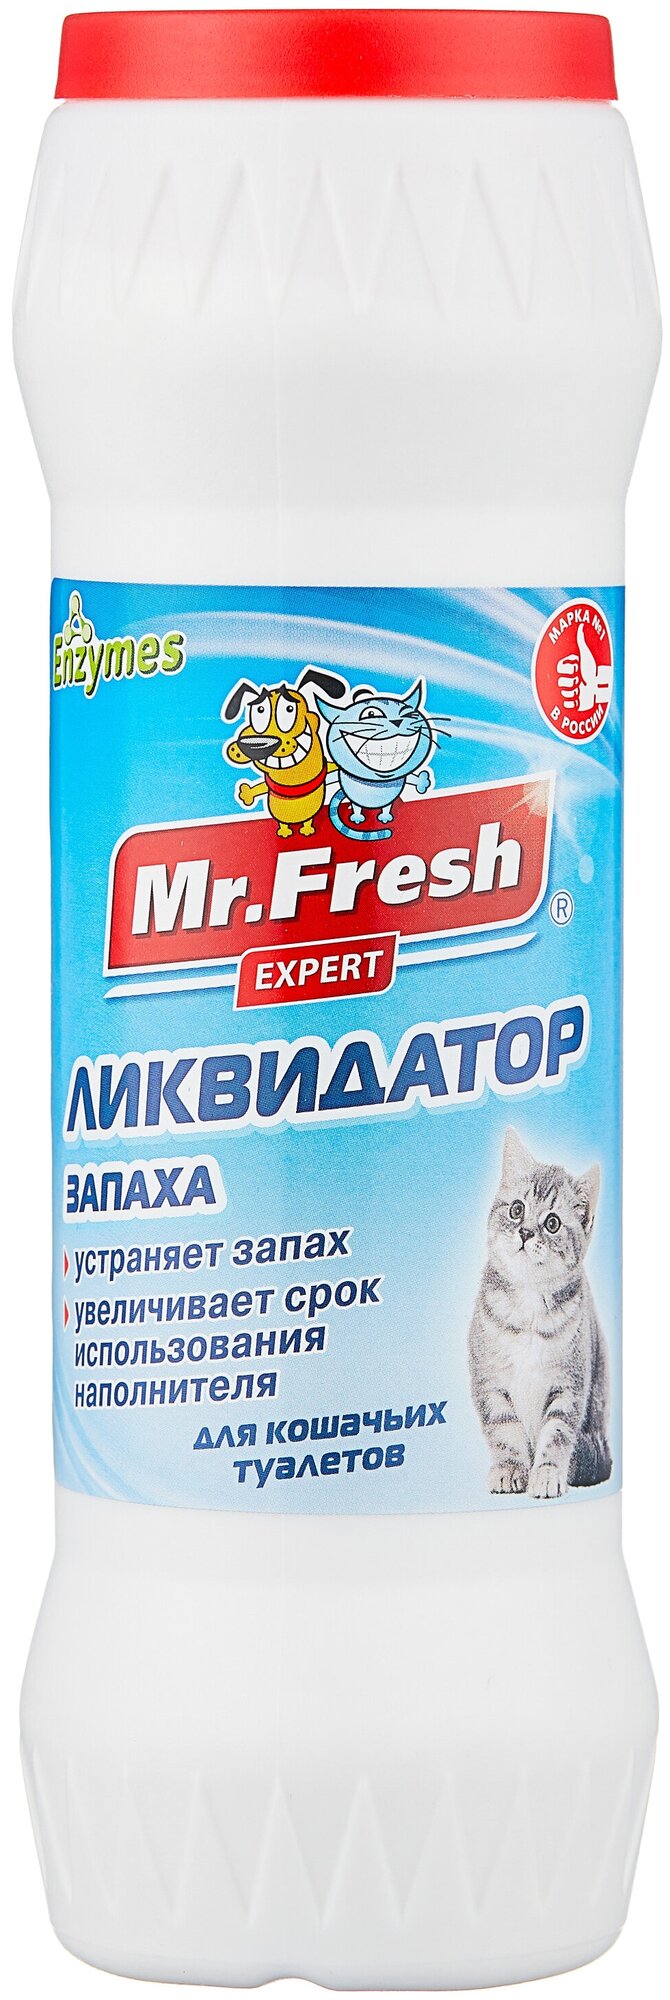 Ликвидатор запахов Mr.Fresh Expert 2в1, порошек для кошачьих туалетов, 500 гр. - фотография № 1